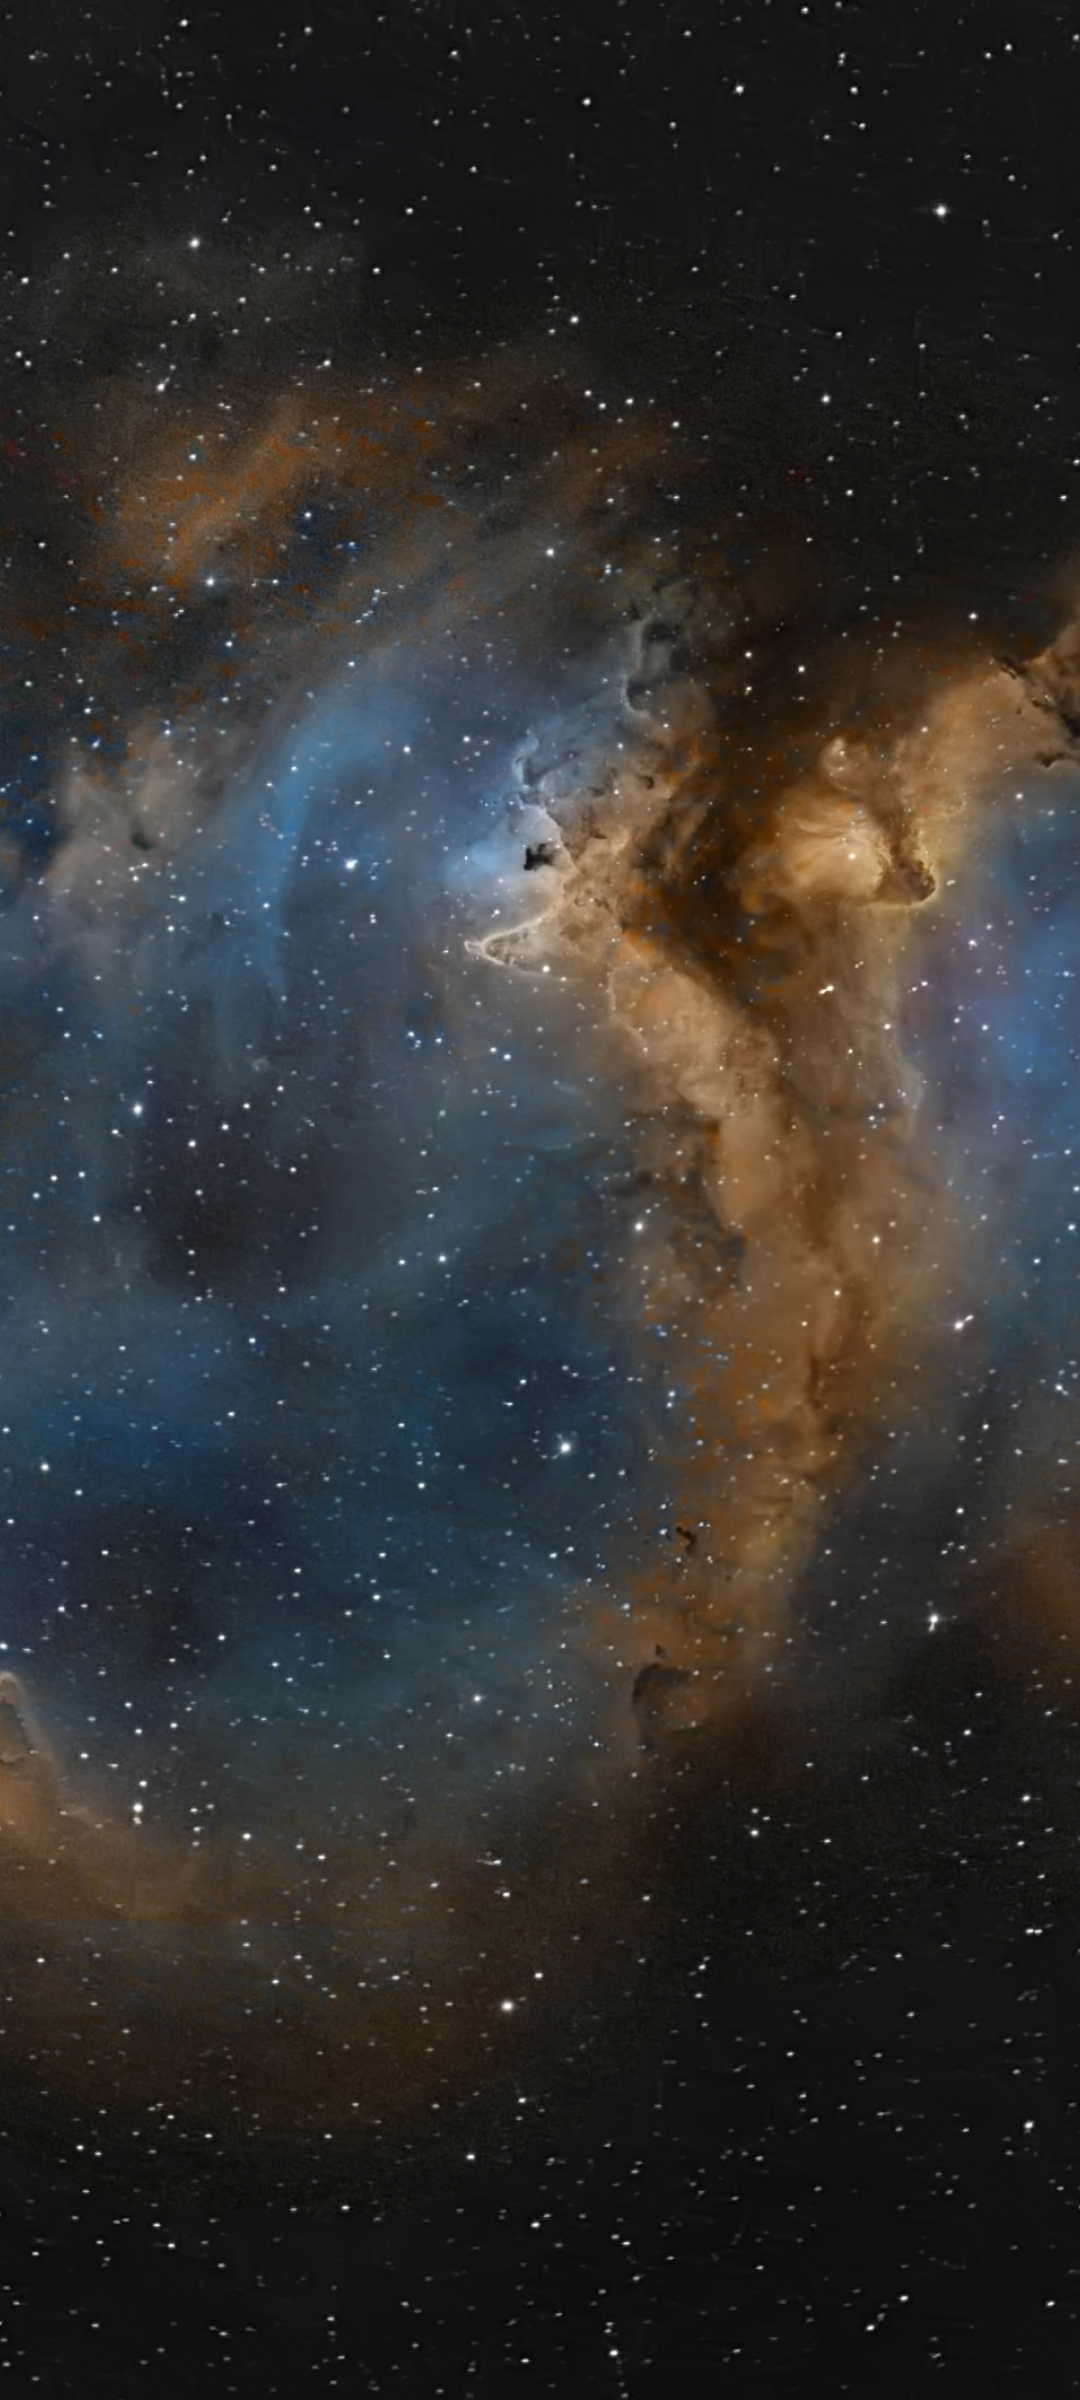 Nebula Universe Space: Với bức ảnh sâu trời này, bạn sẽ được khám phá những hình ảnh tuyệt đẹp về vũ trụ khổng lồ, các tinh vân, các sao chổi, các thiên thạch… Tất cả cùng tạo nên khung cảnh kỳ thú và đầy huyền bí. Xem ngay bức ảnh để cảm nhận điều tuyệt vời này.